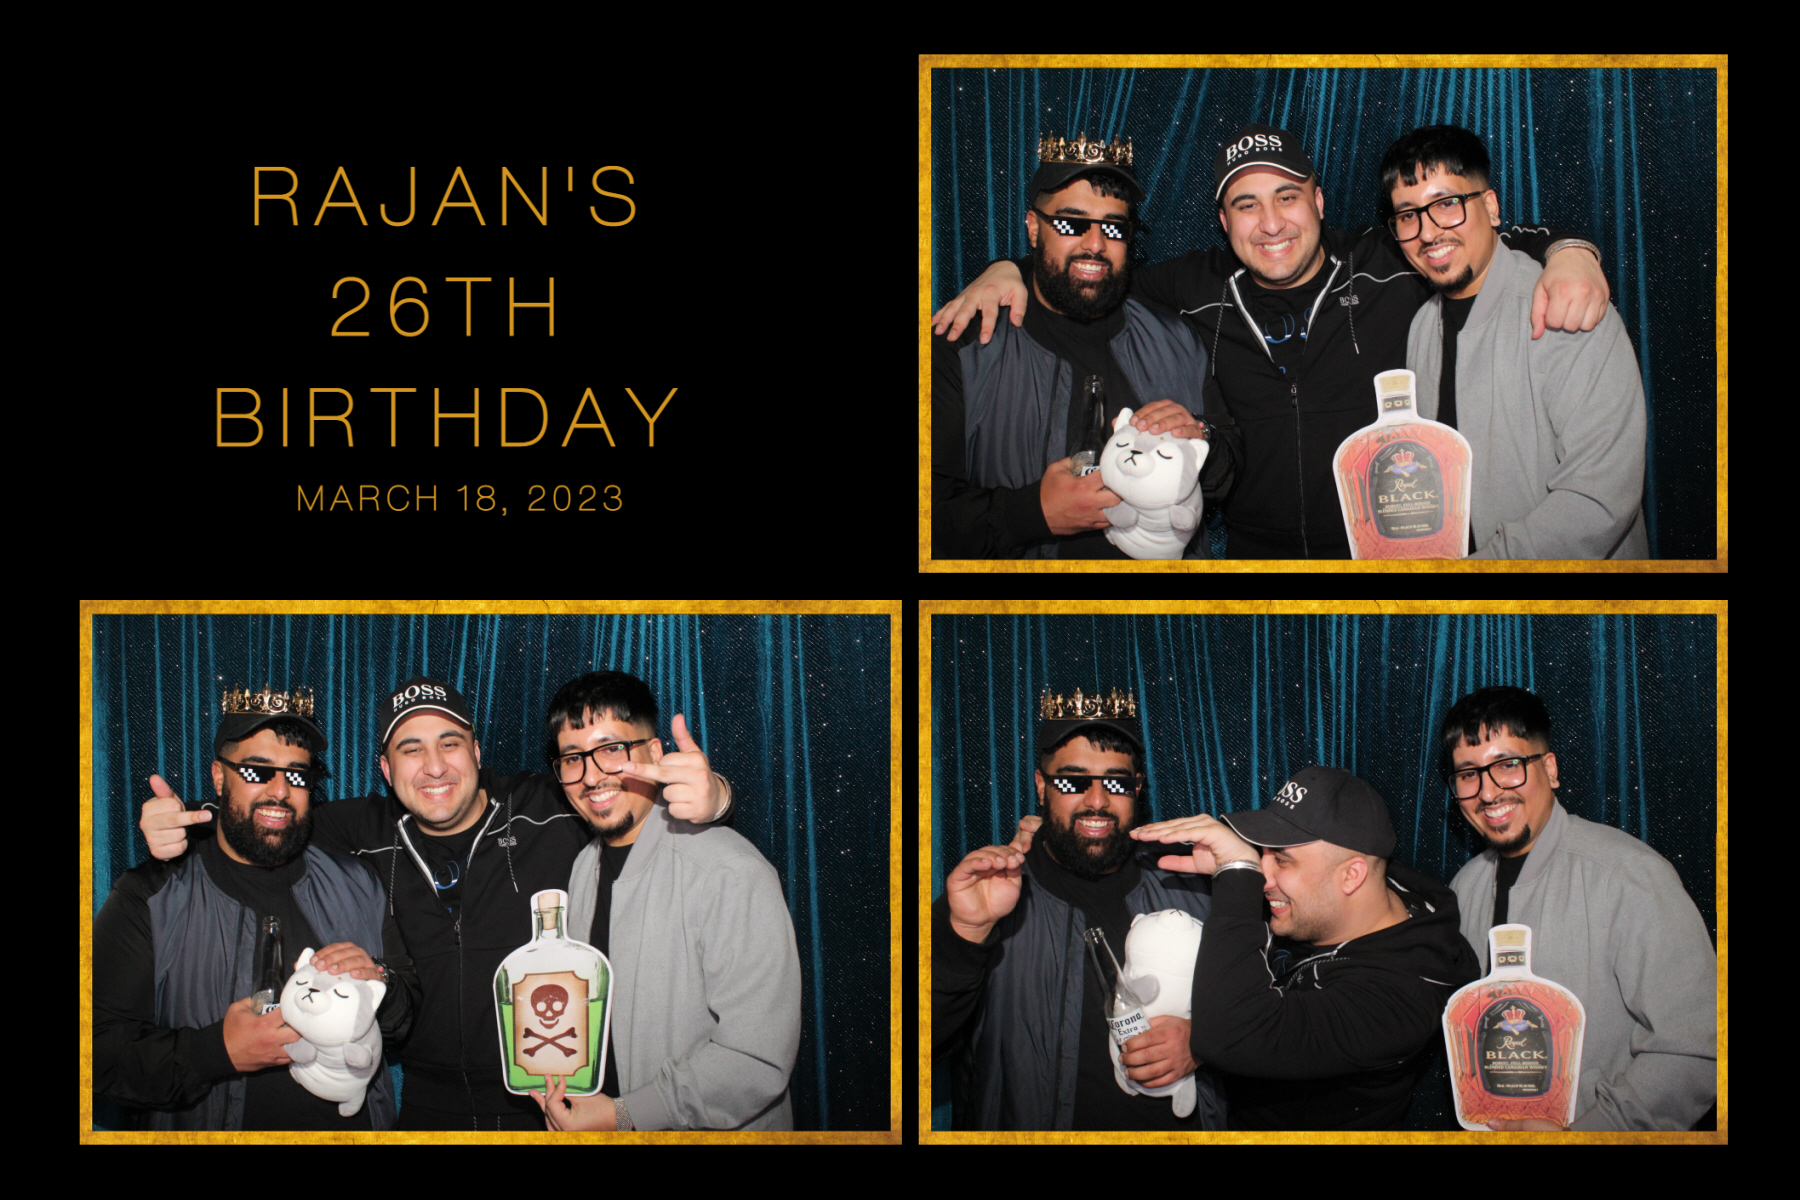 Rajan_s Birthday_20